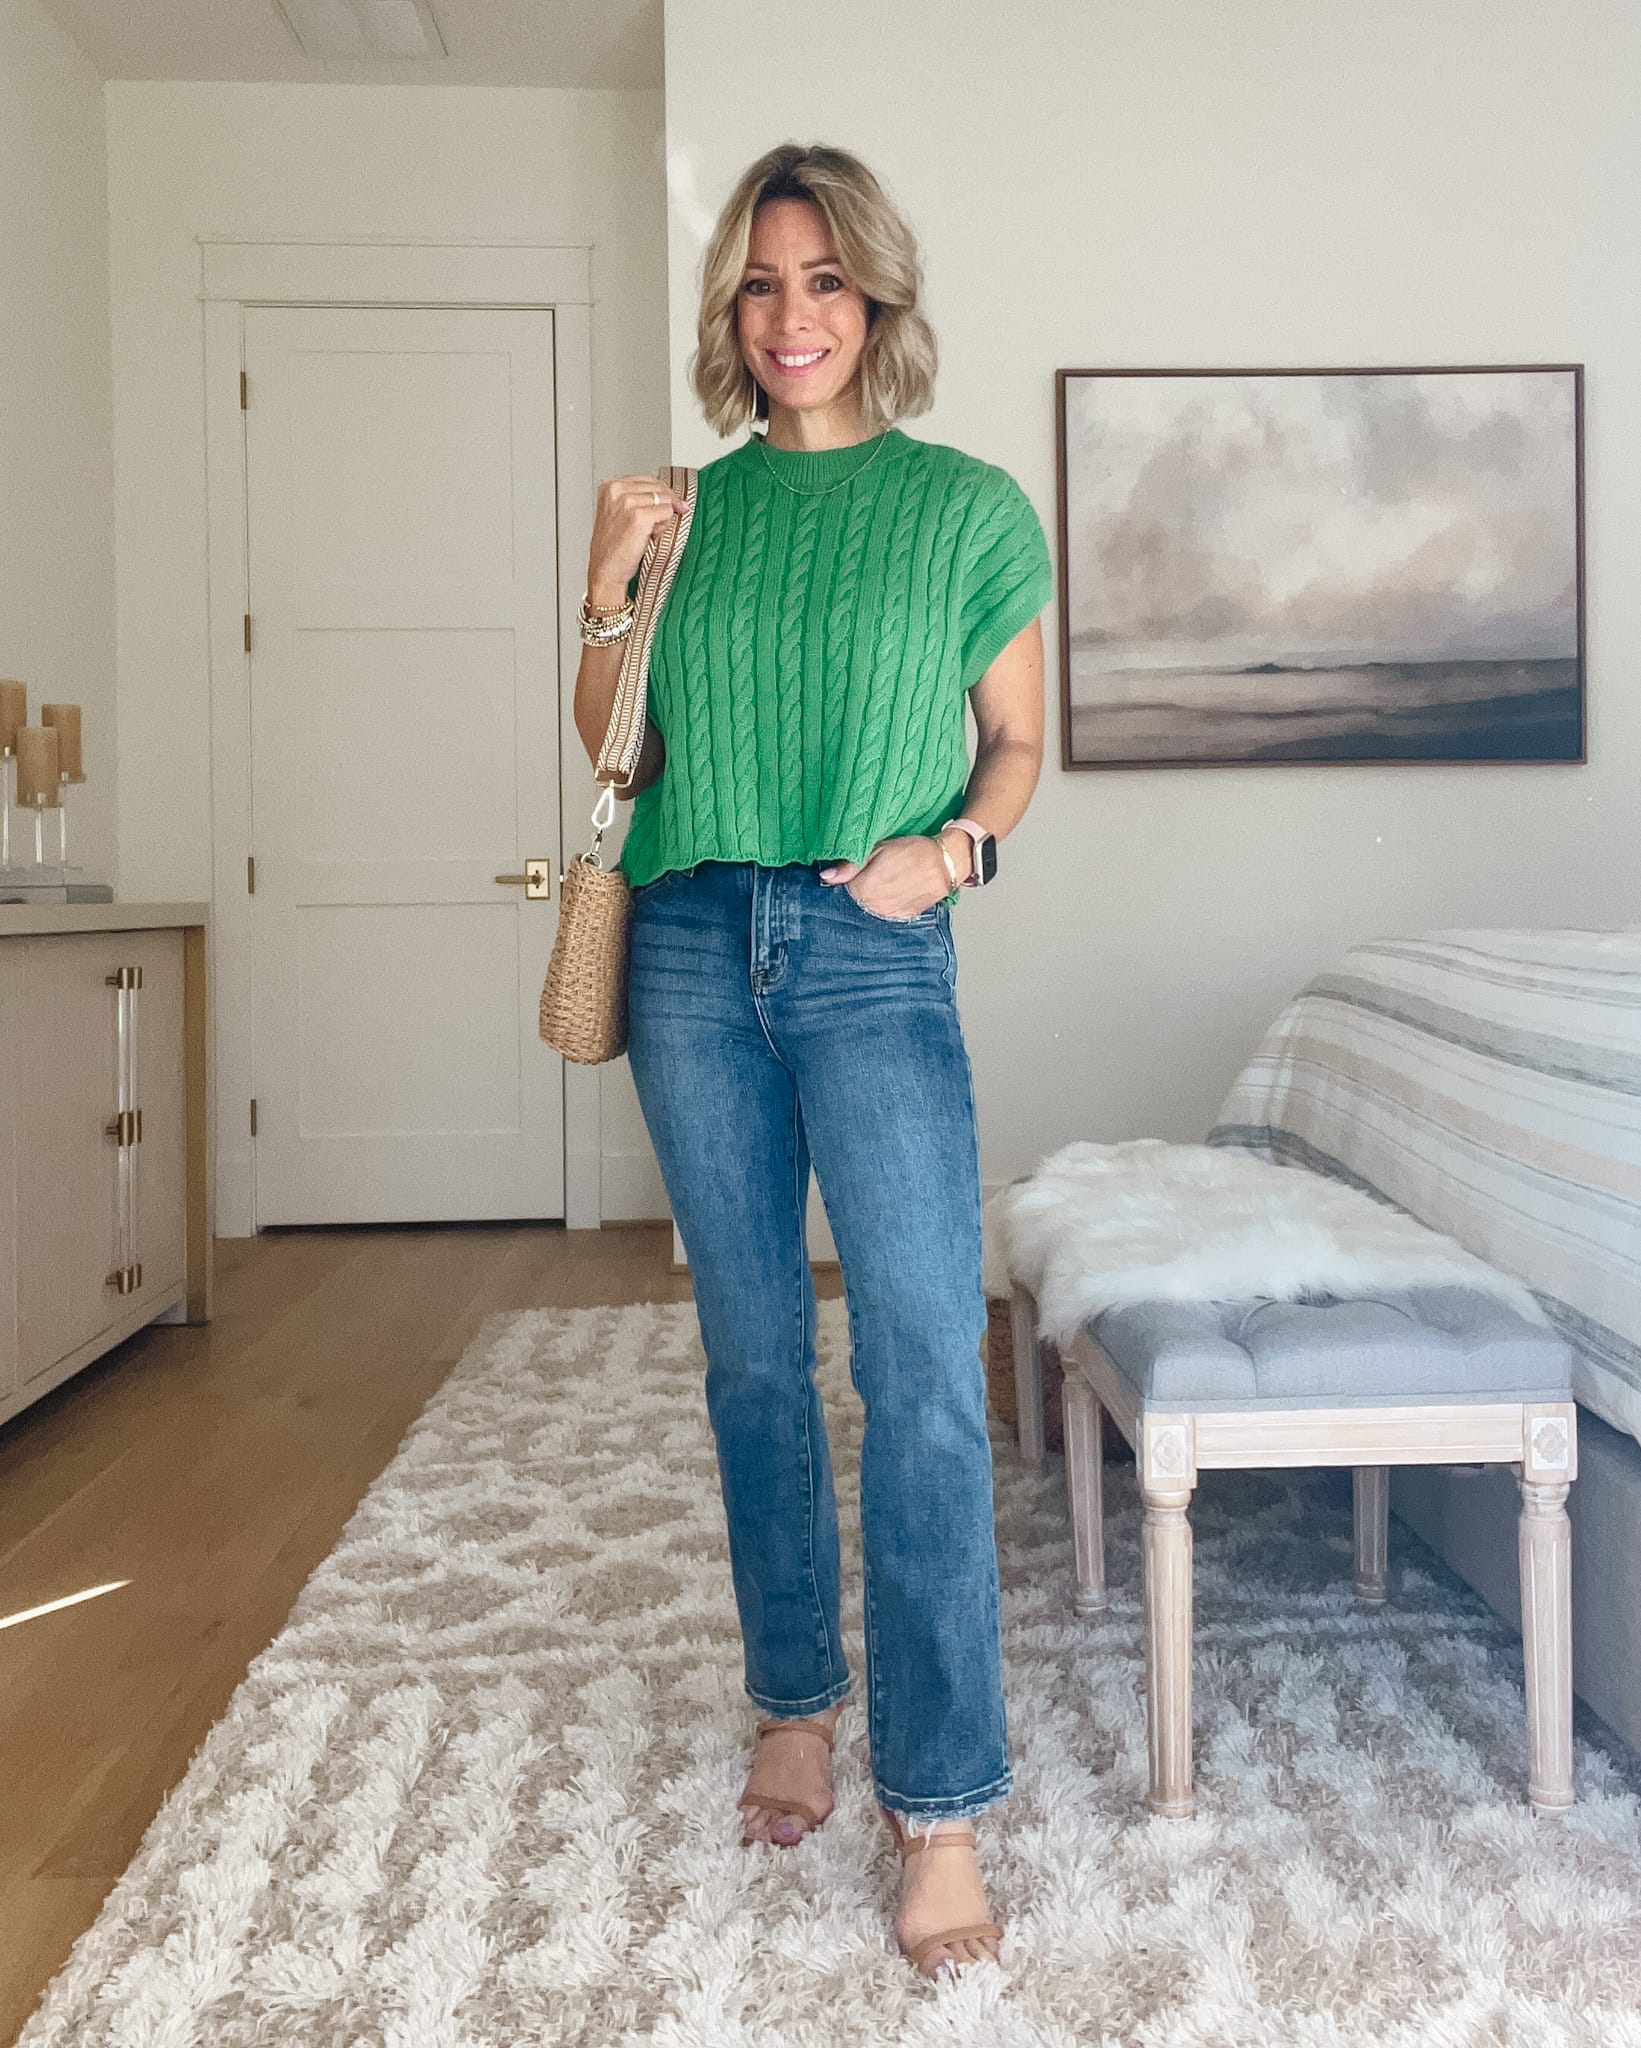 Green Cable Knit Vest, Jeans, Sandals 